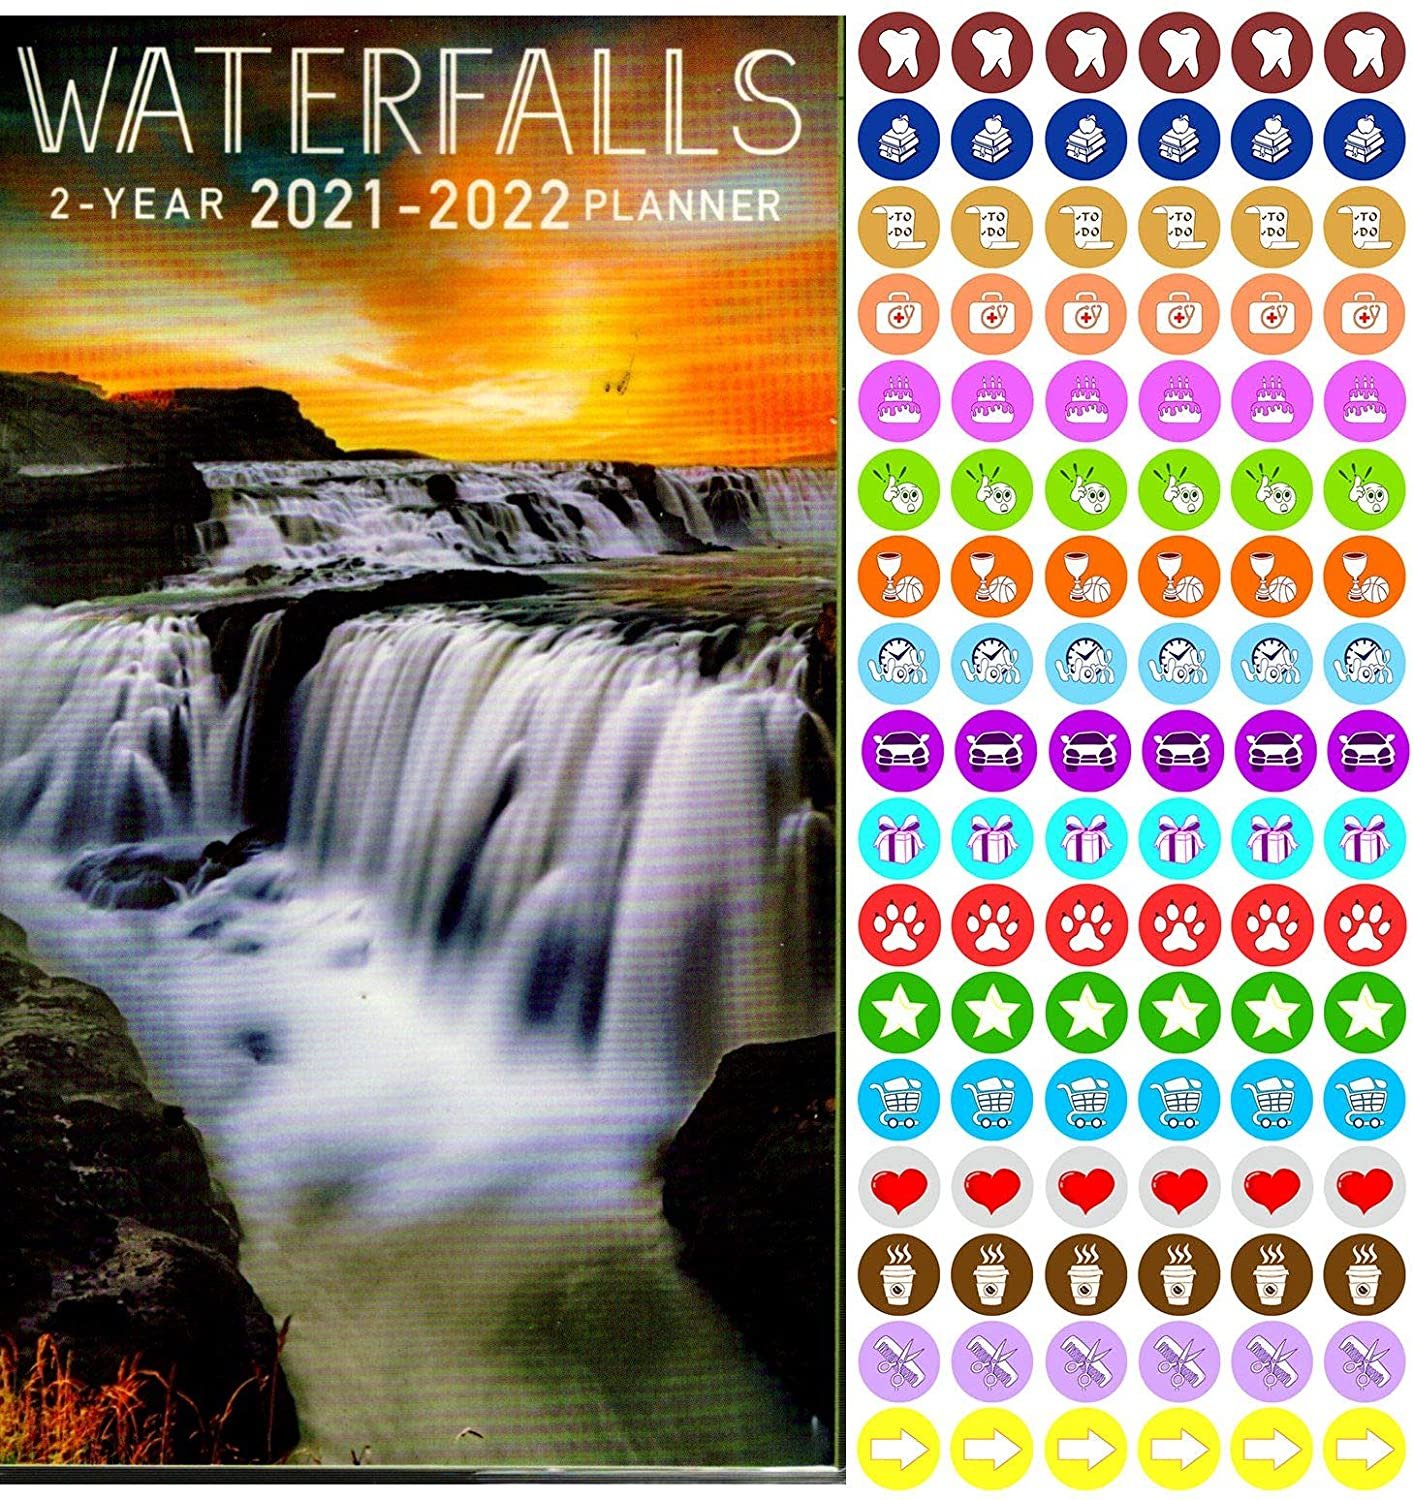 Waterfalls 2021-2022 2 Year Pocket Planner/Calendar/Organizer - with 100 Reminder Stickers